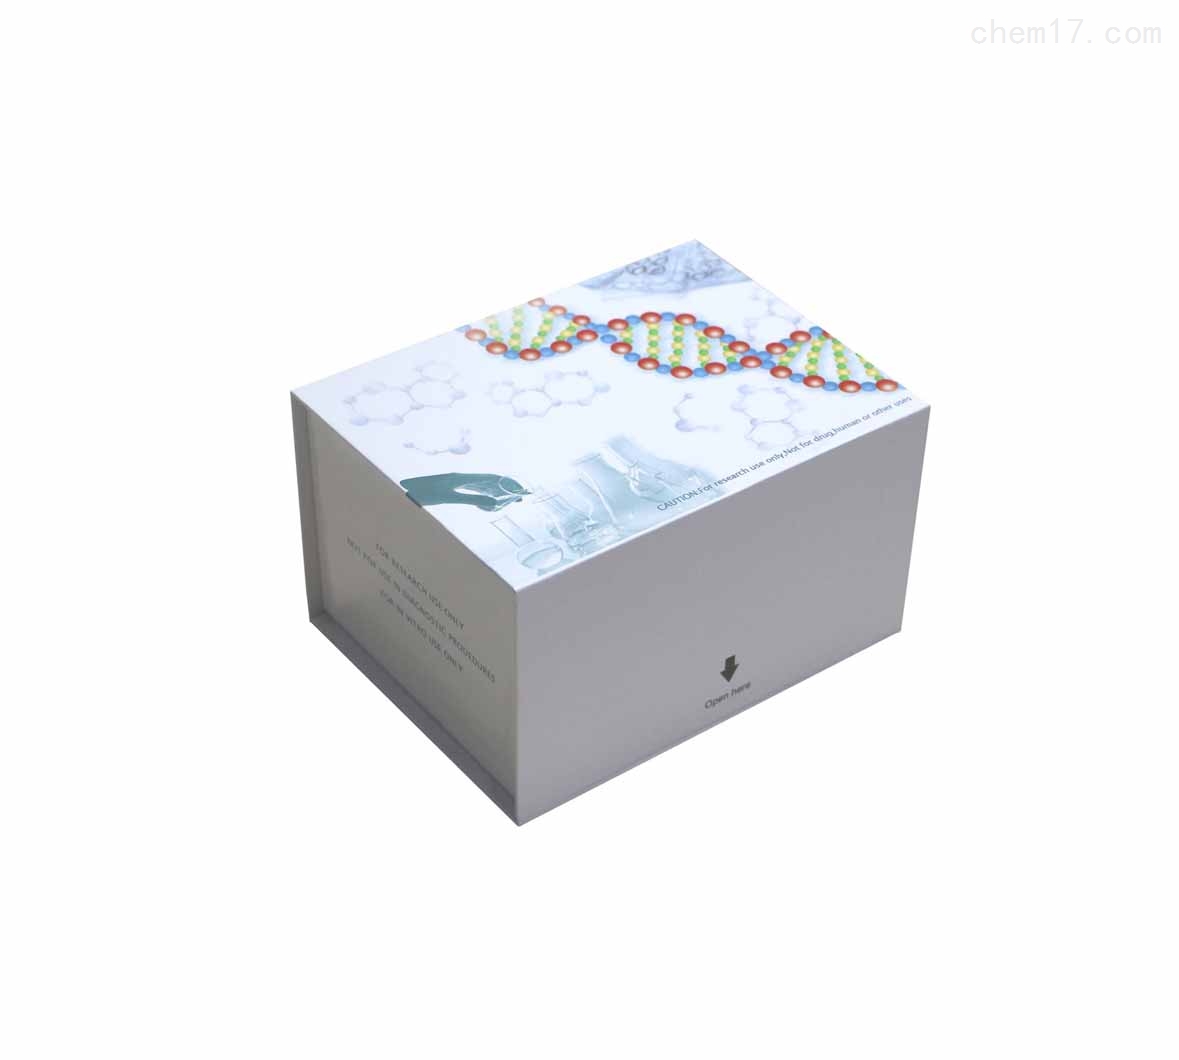 大鼠线粒体呼吸链复合物III(辅酶Q-细胞色素C还原酶)ELISA试剂盒现货说明书